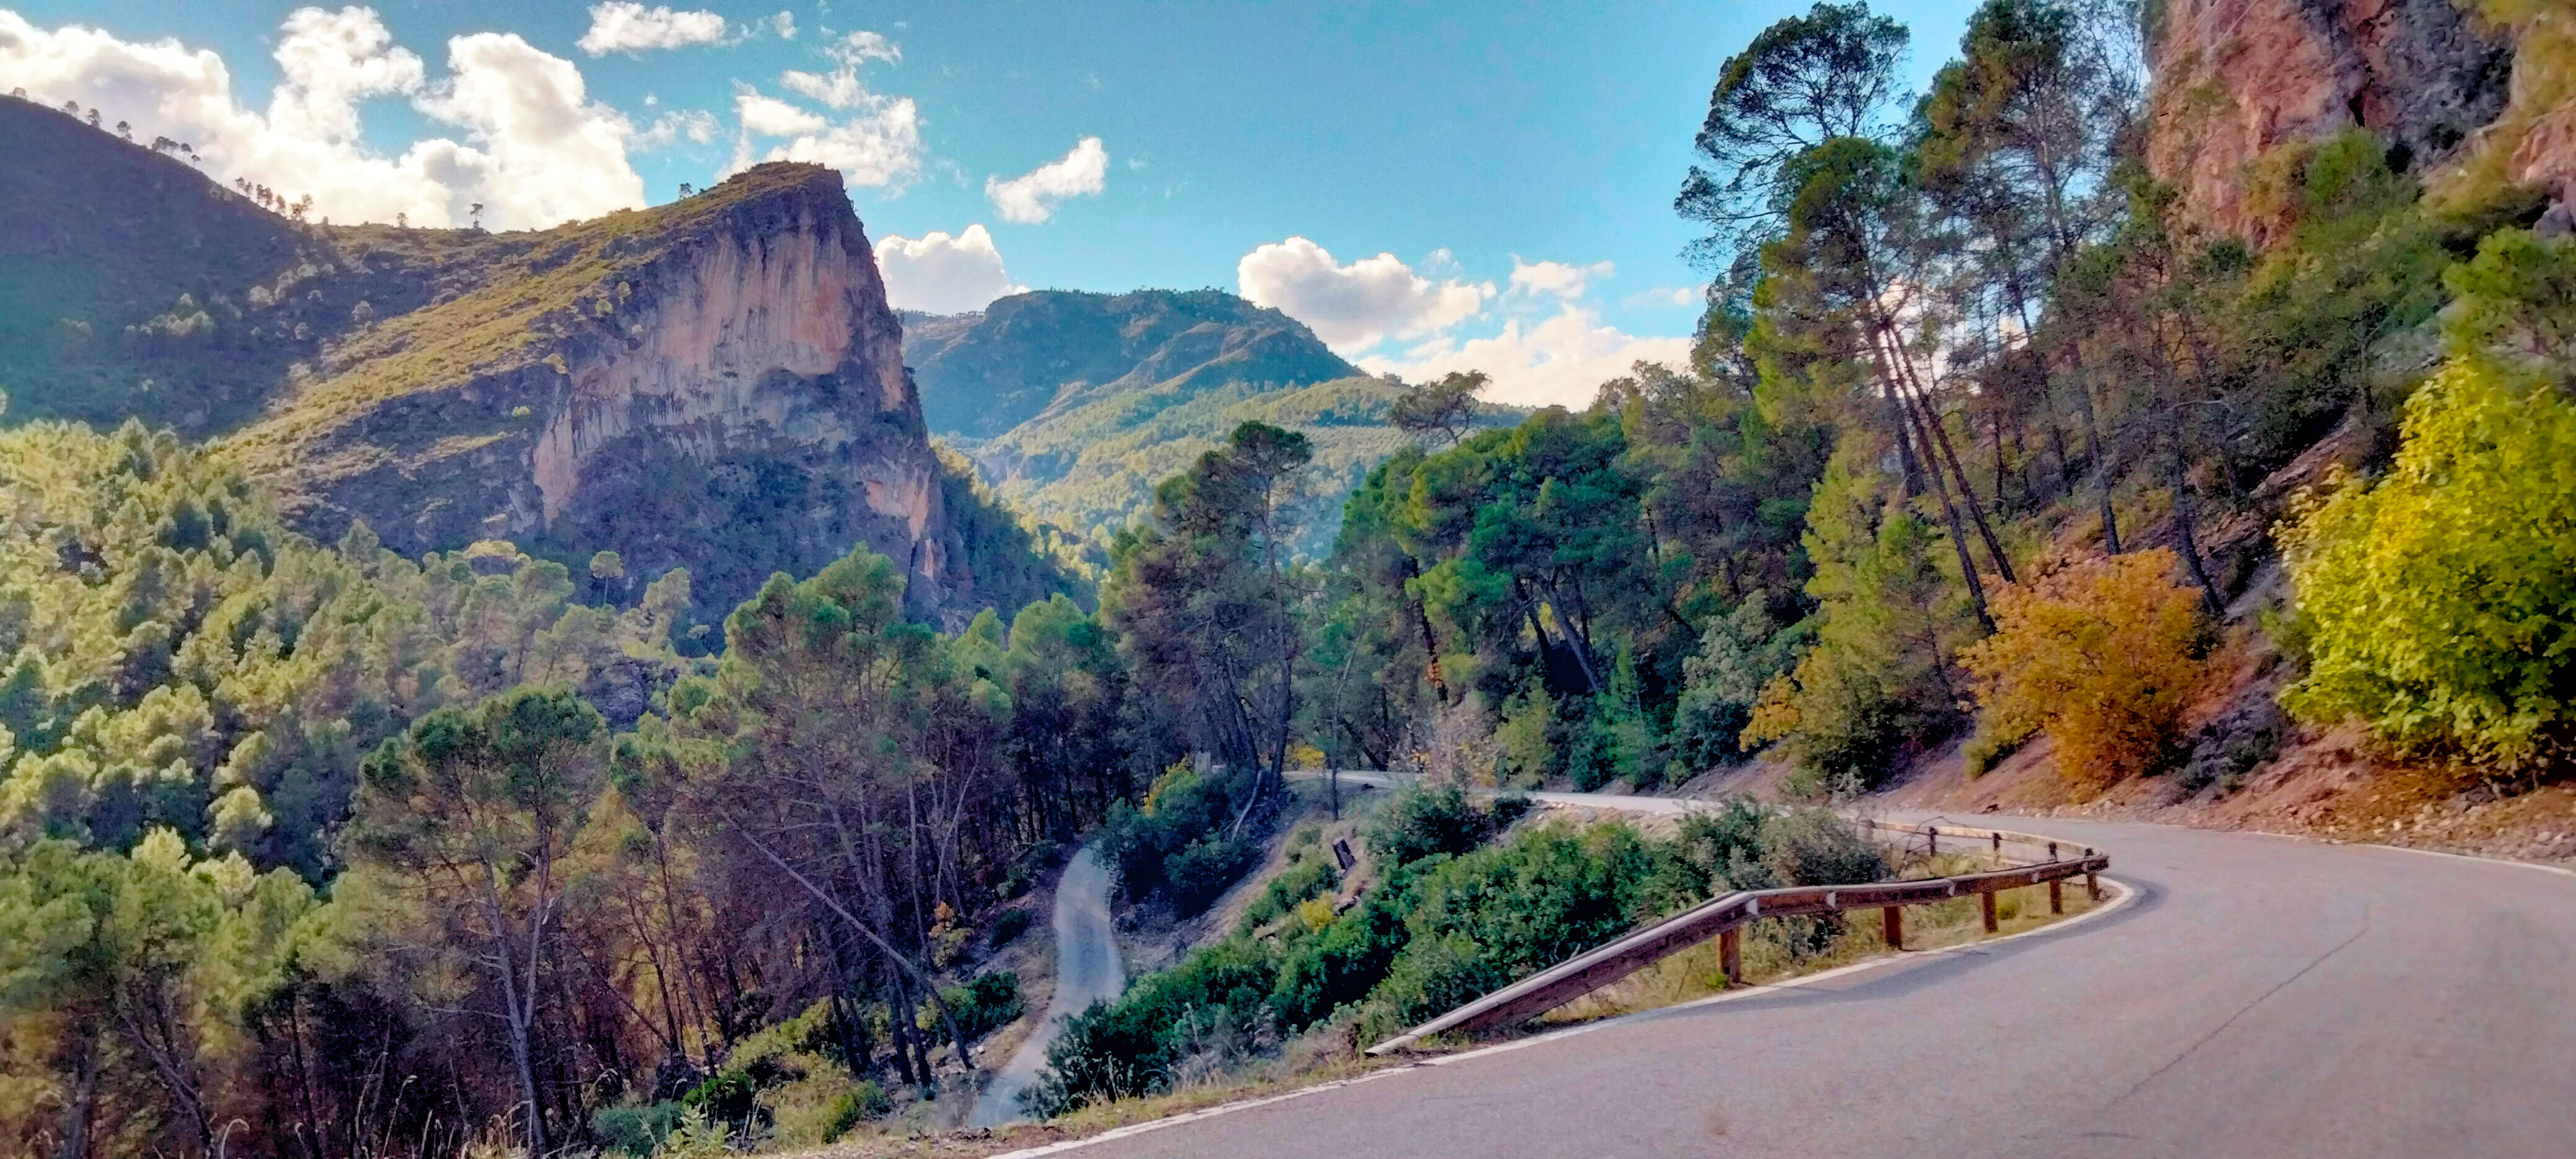 Sierras de Cazorla, Segura & Las Villas route